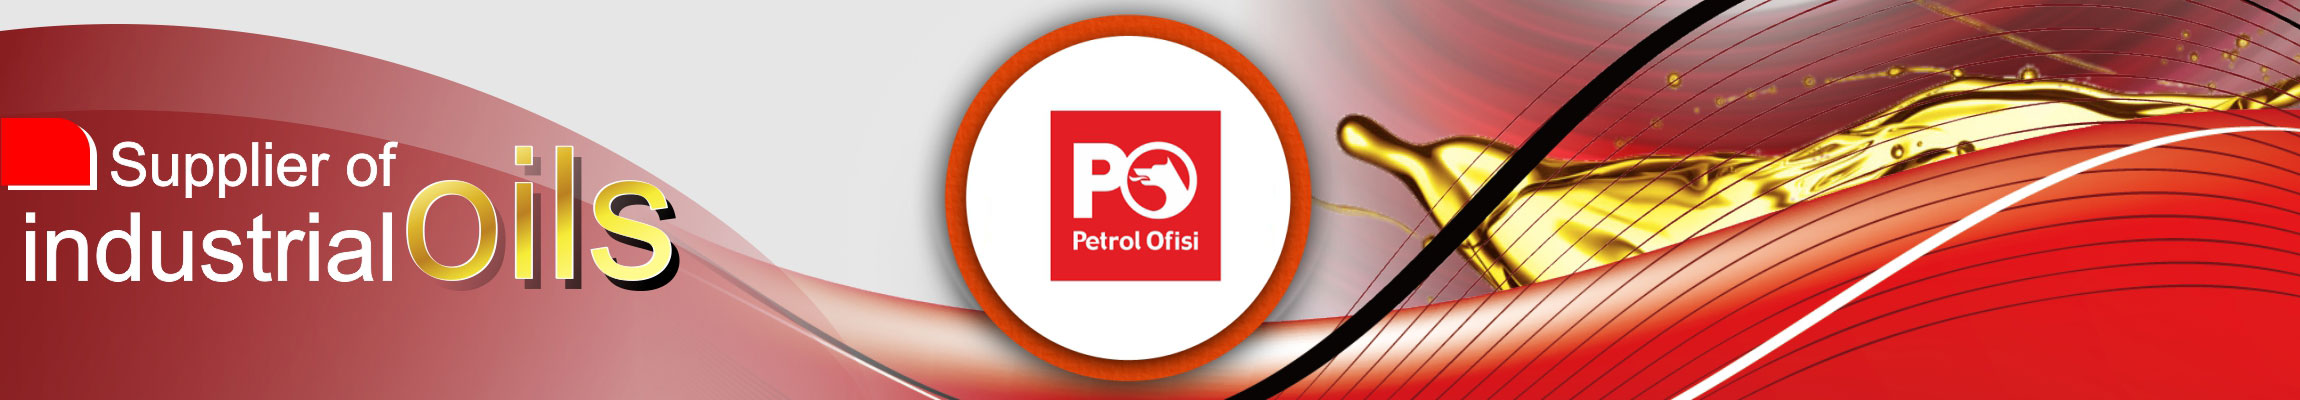 معرفی شرکت پترول اوفیسی Petrol Ofisi